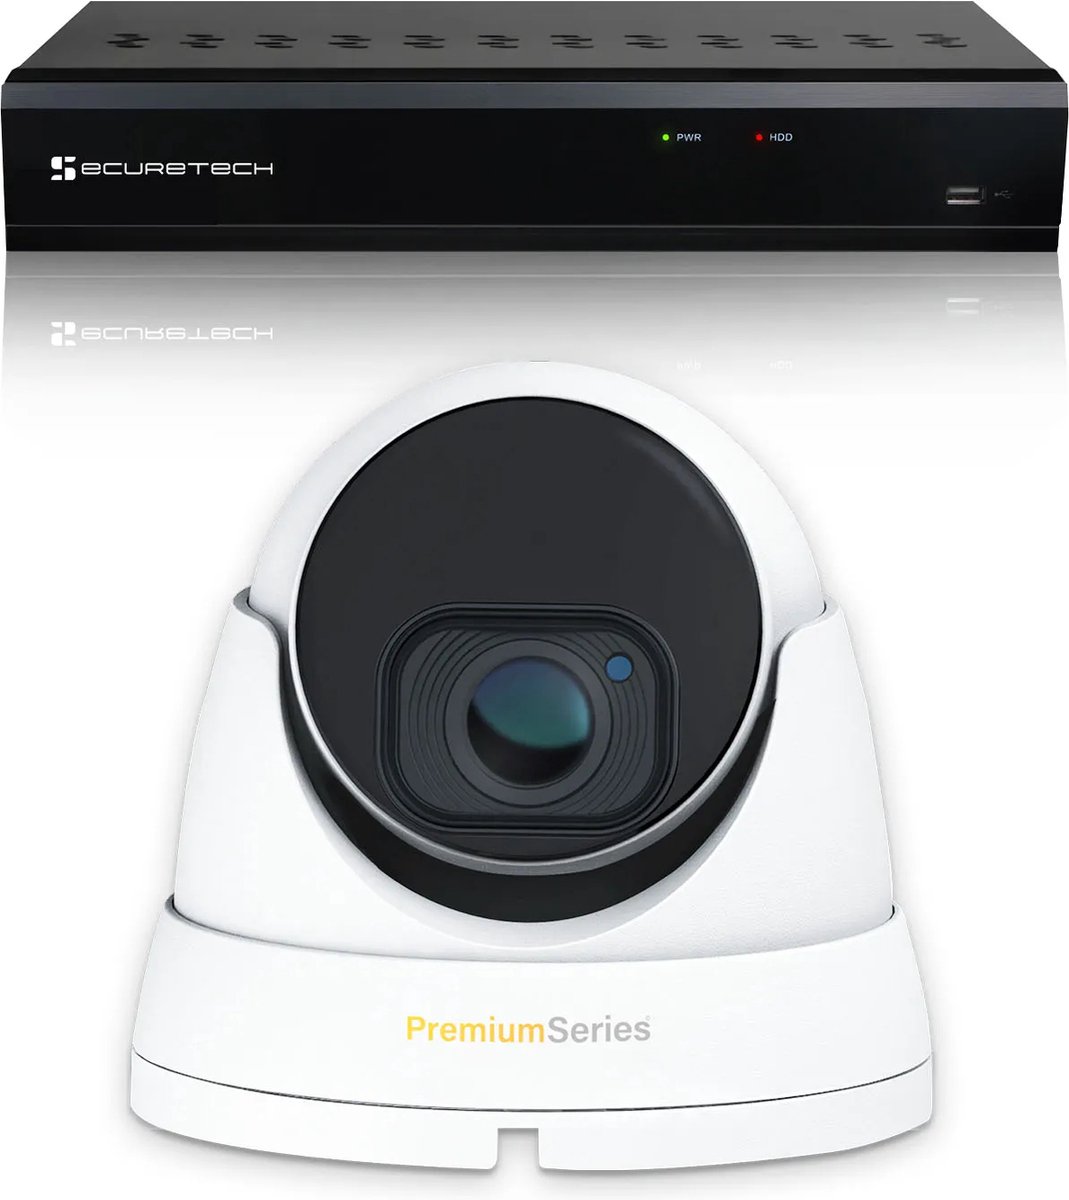 Securetech bekabeld camerabewaking systeem - met 1 beveiligingscamera - voor binnen & buiten - haarscherp beeldkwaliteit - nachtzicht tot 30 meter - software voor smartphone & pc